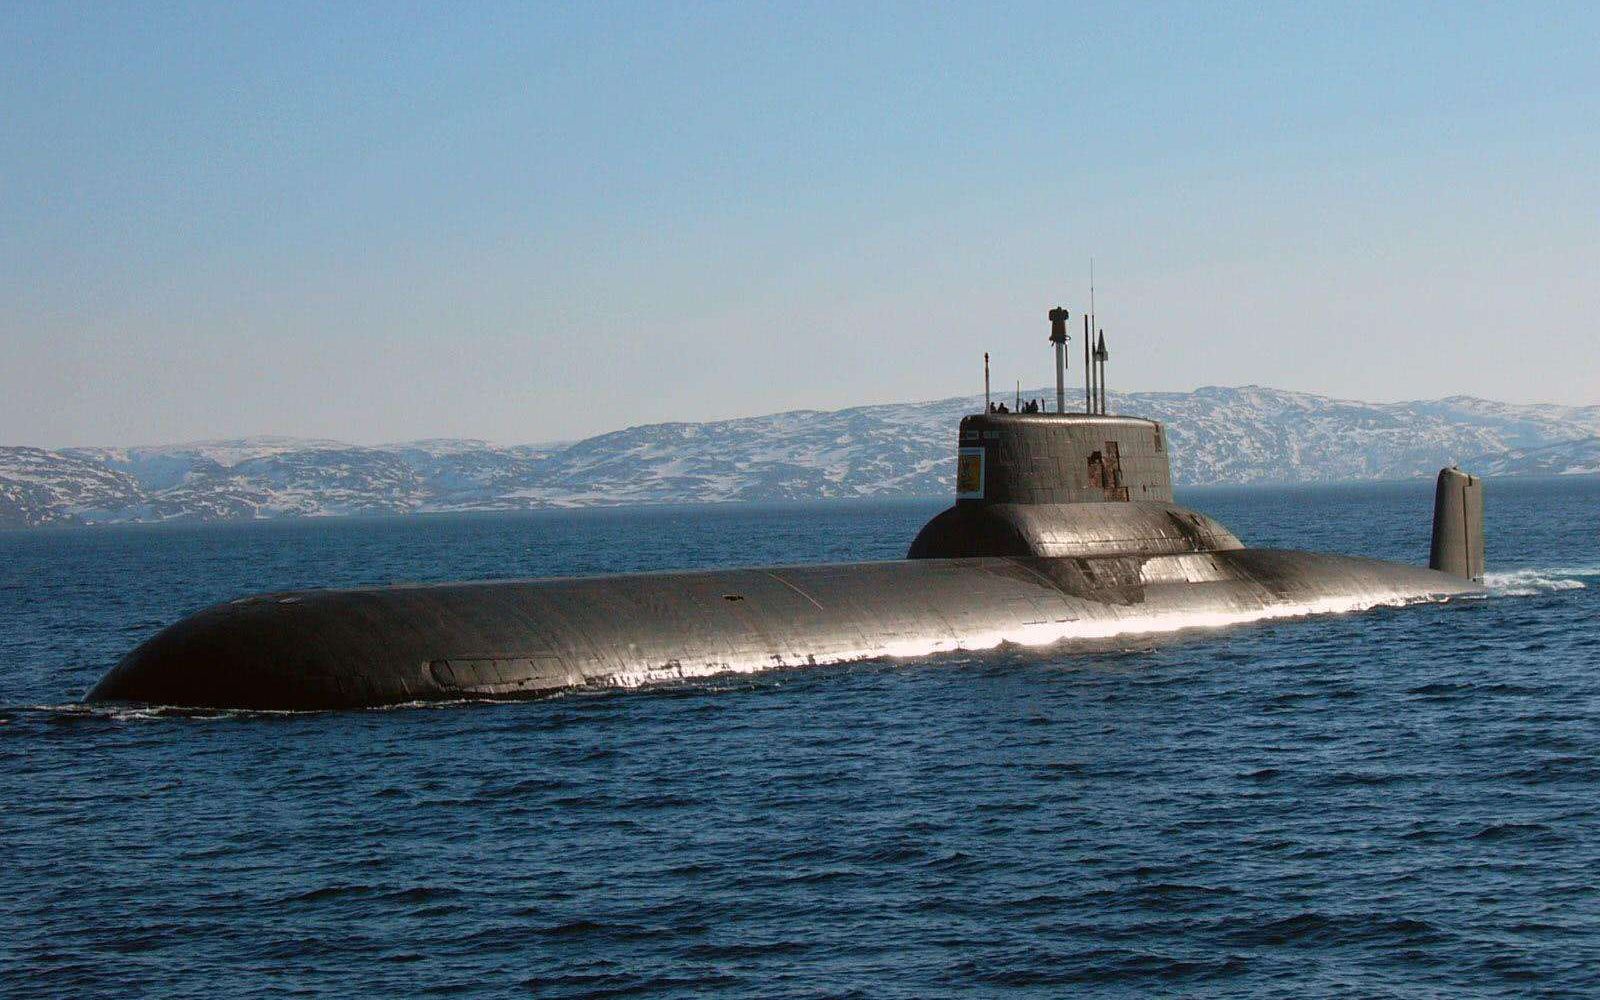 中国核动力潜水艇096图片